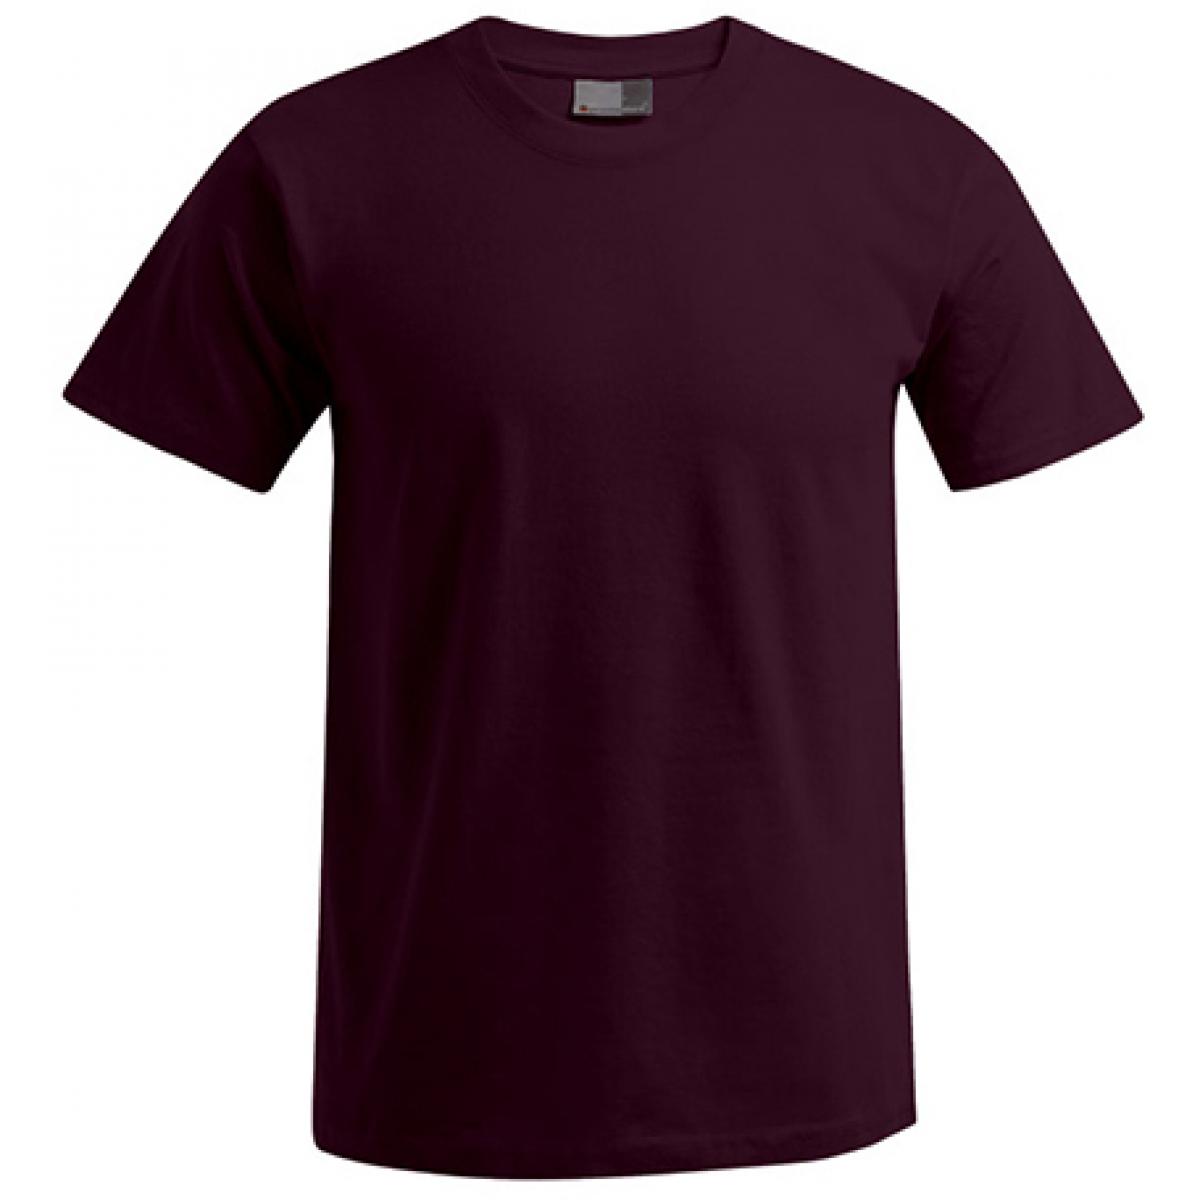 Hersteller: Promodoro Herstellernummer: 3000/3099 Artikelbezeichnung: Men´s Premium Herren T-Shirt - bis 5XL Farbe: Burgundy